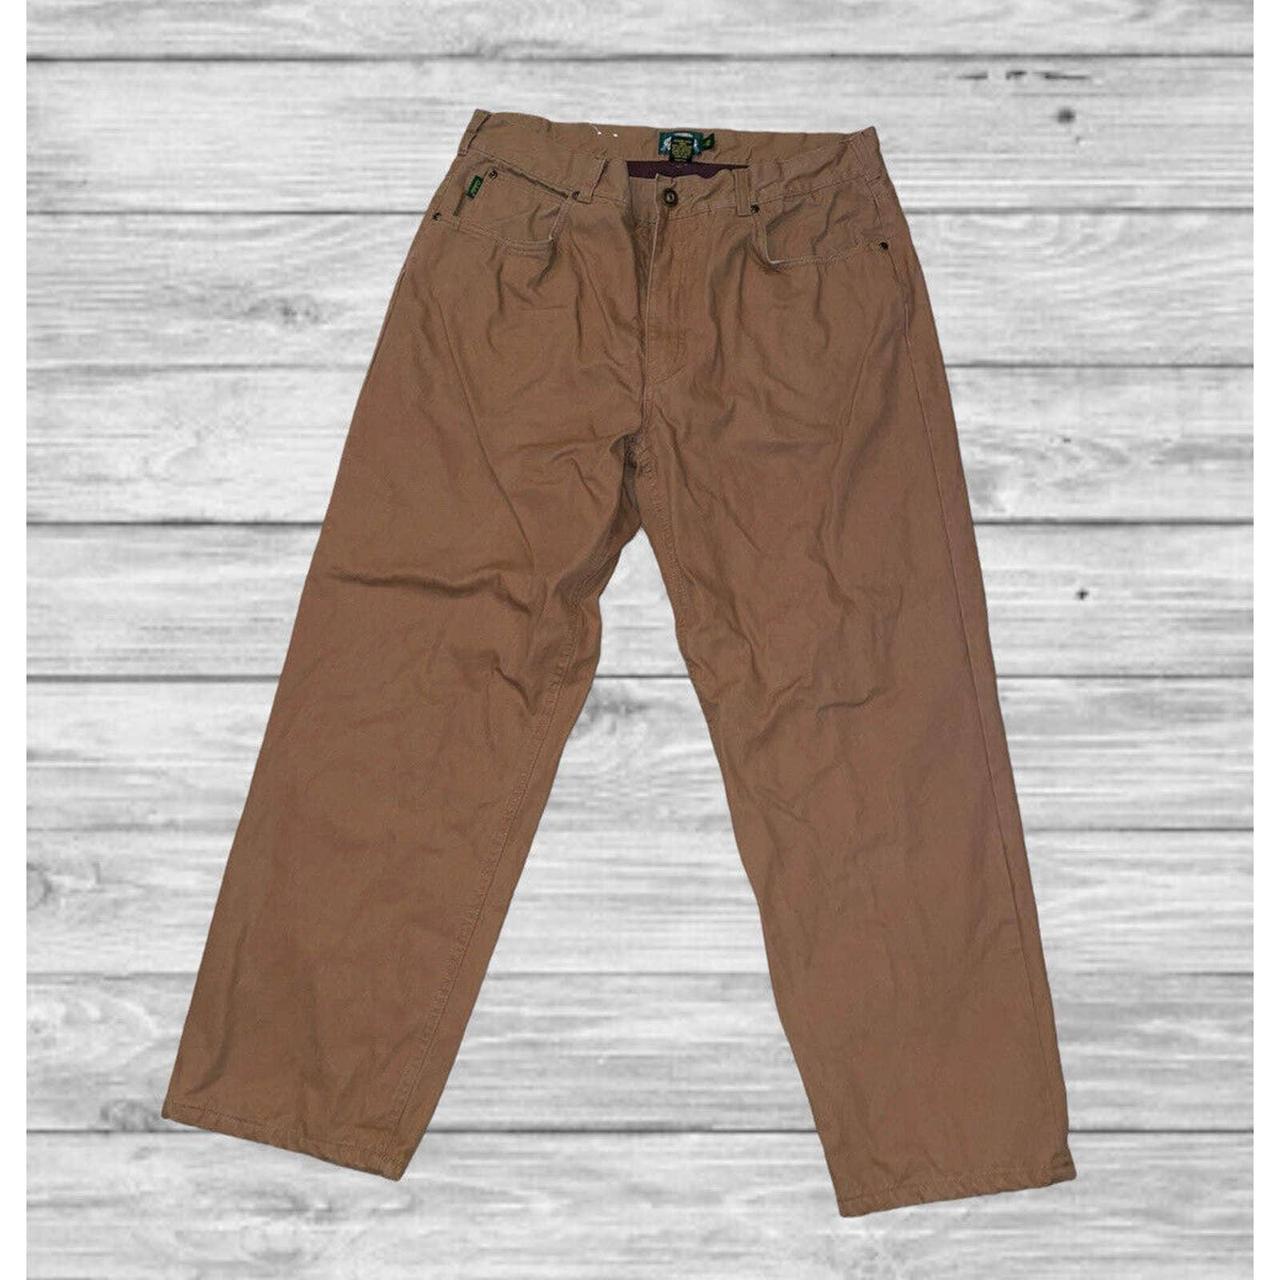 Cabela's Men's Flannel Lined Heavy Duty Pants 38/30 - Depop